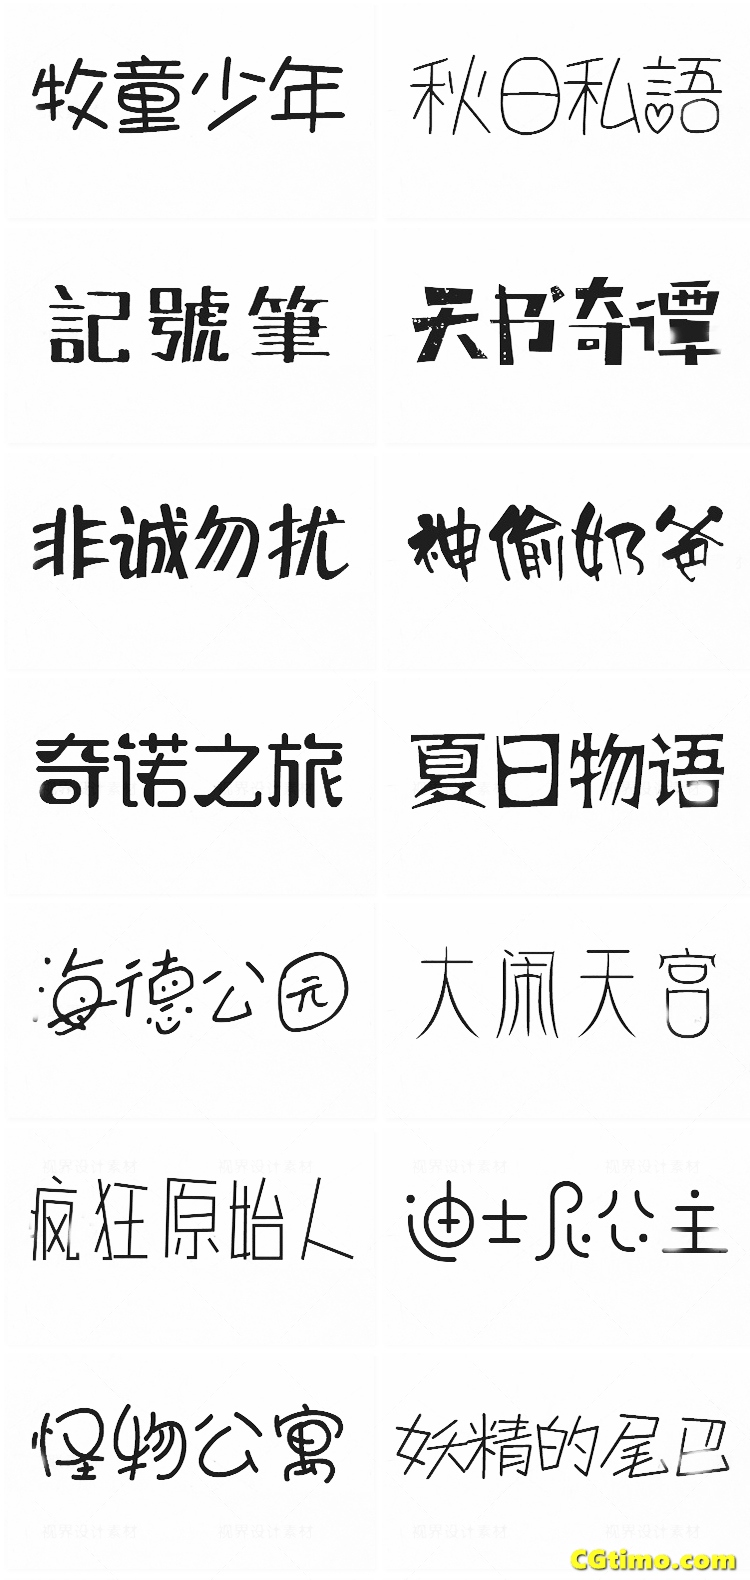 字体-儿童卡通涂鸦效果中文字体下载 字体下载 第45张